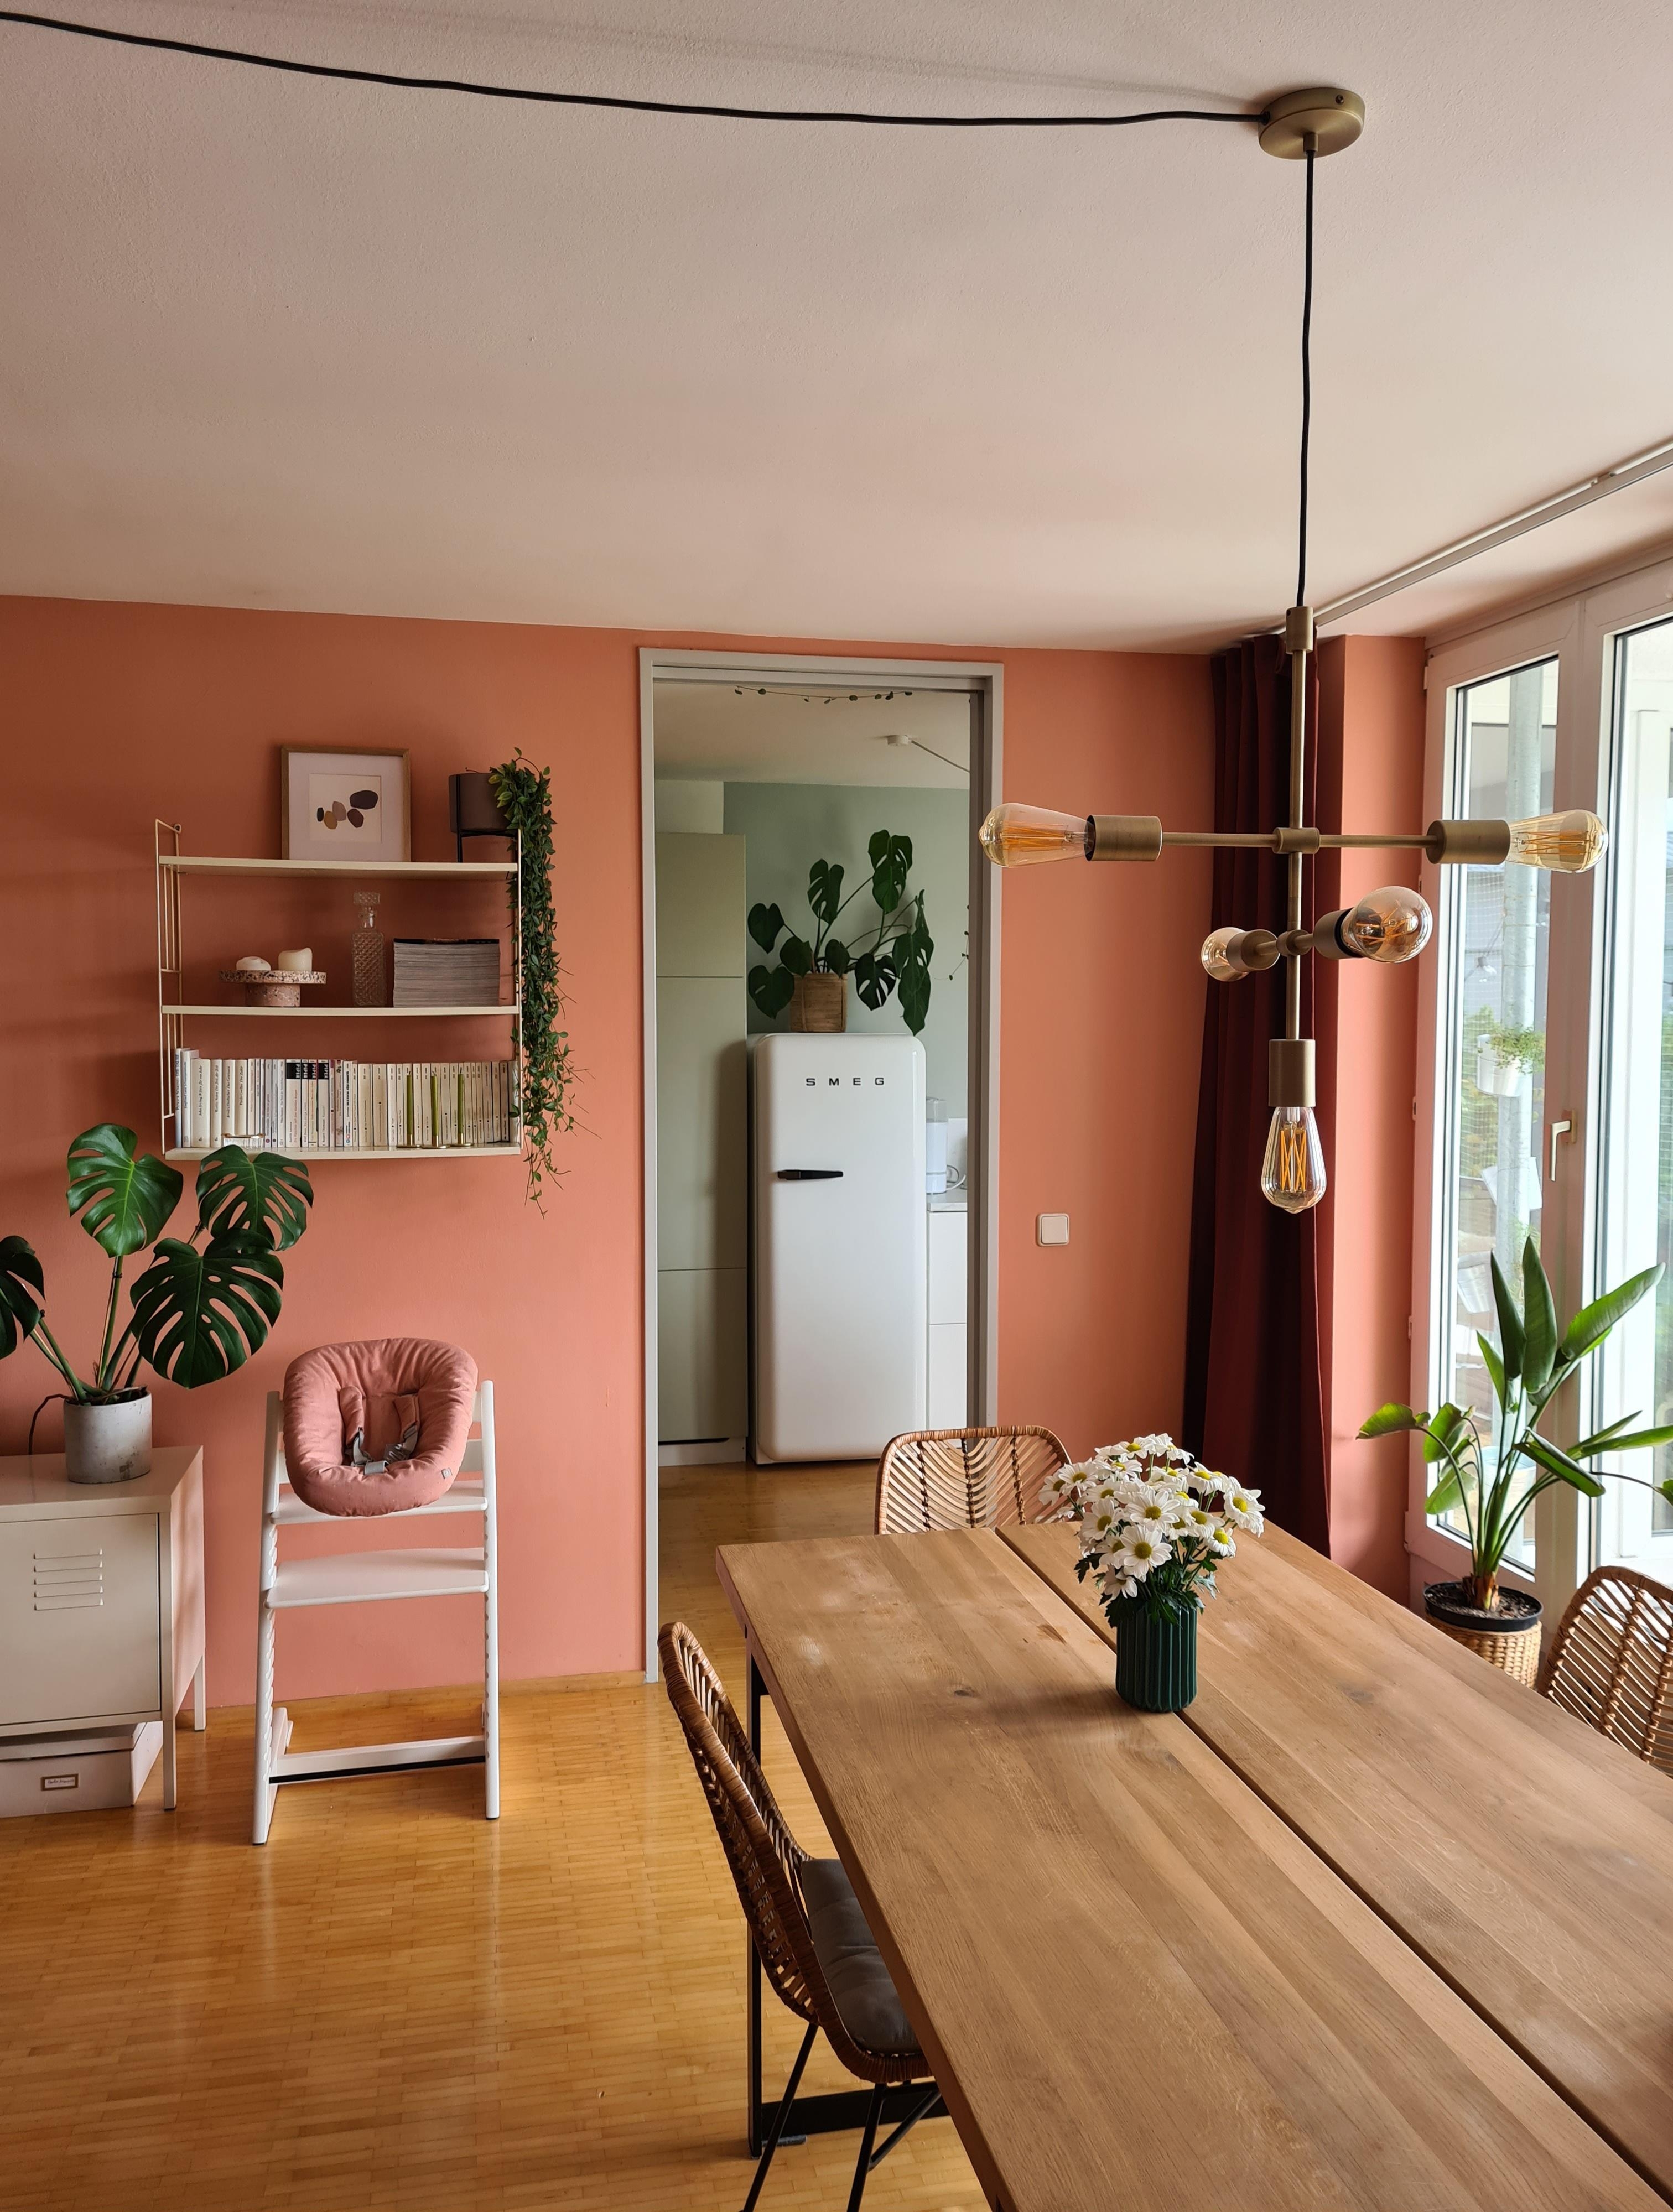 Mein #lieblingsraum ist das 'leberkäsfarbene' #wohnzimmer/#esszimmer mit Blick in die graugrüne #küche #livingchallenge